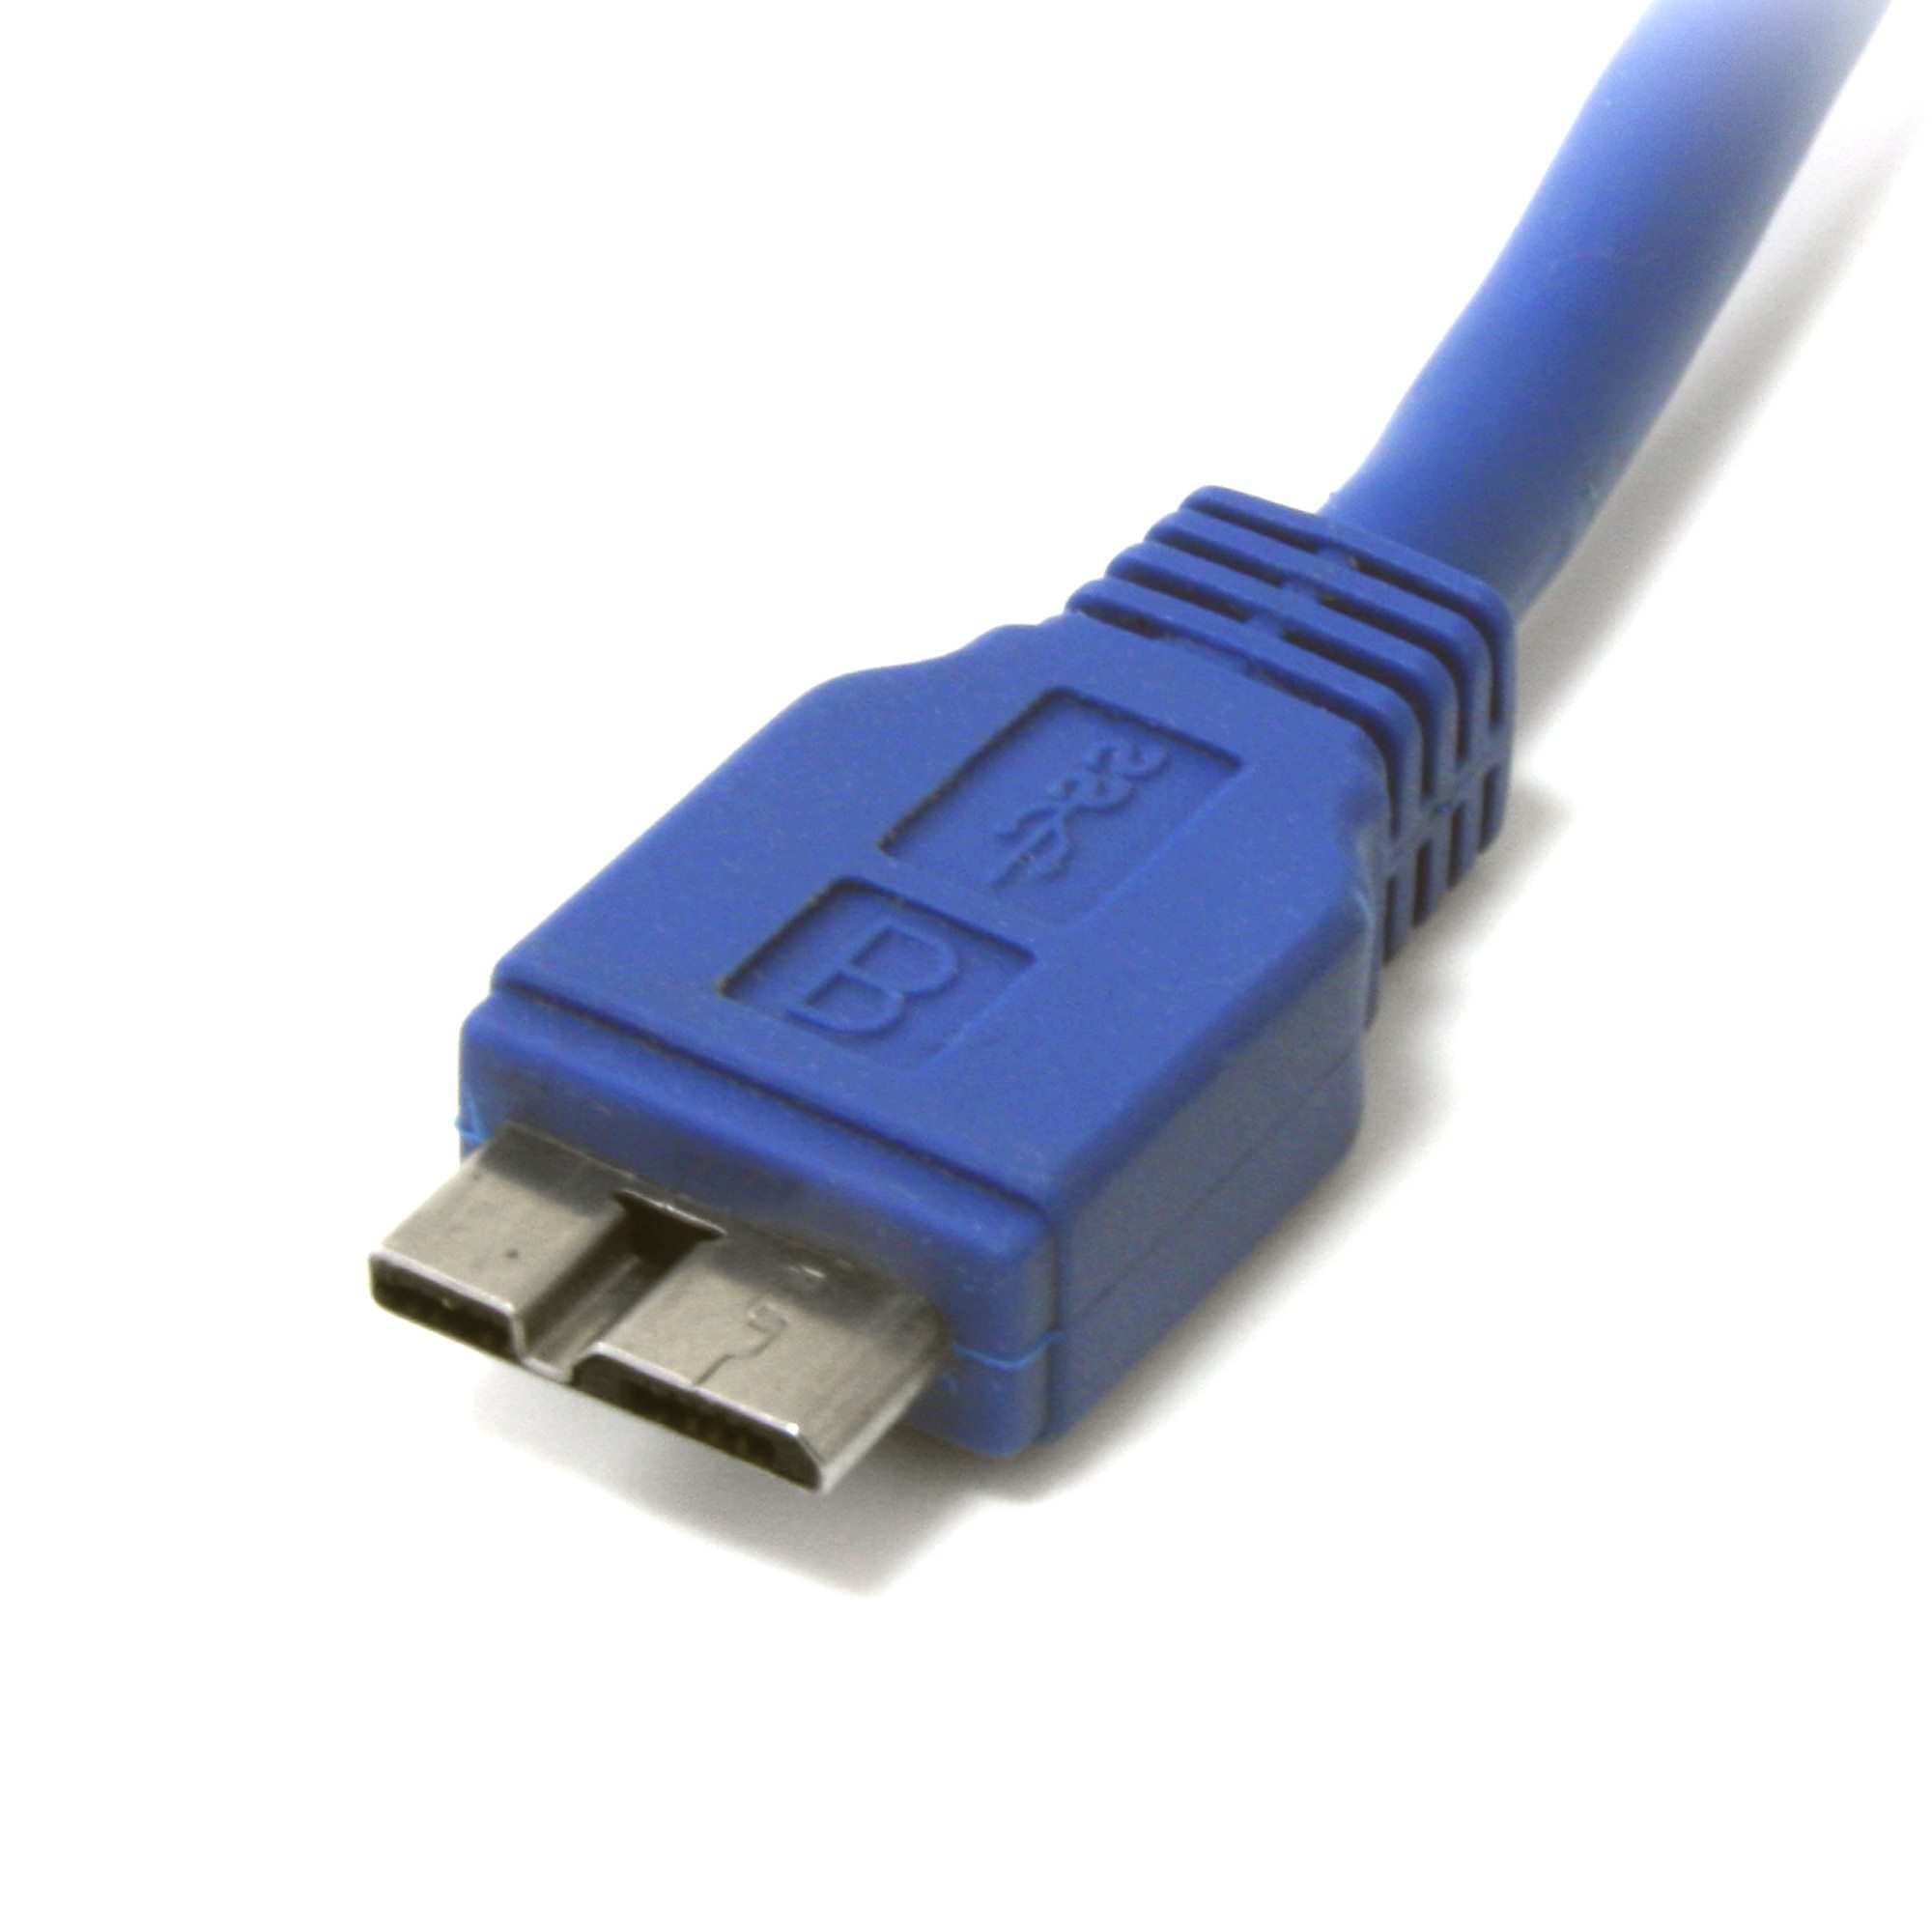 Адреса микро. USB 3.0 Type b разъем. Коннектор USB 3.0 Micro b. USB 3.0 Micro b гнездо. Кабель USB 3.0 Type-a, Micro-USB 2.0 Type-b.